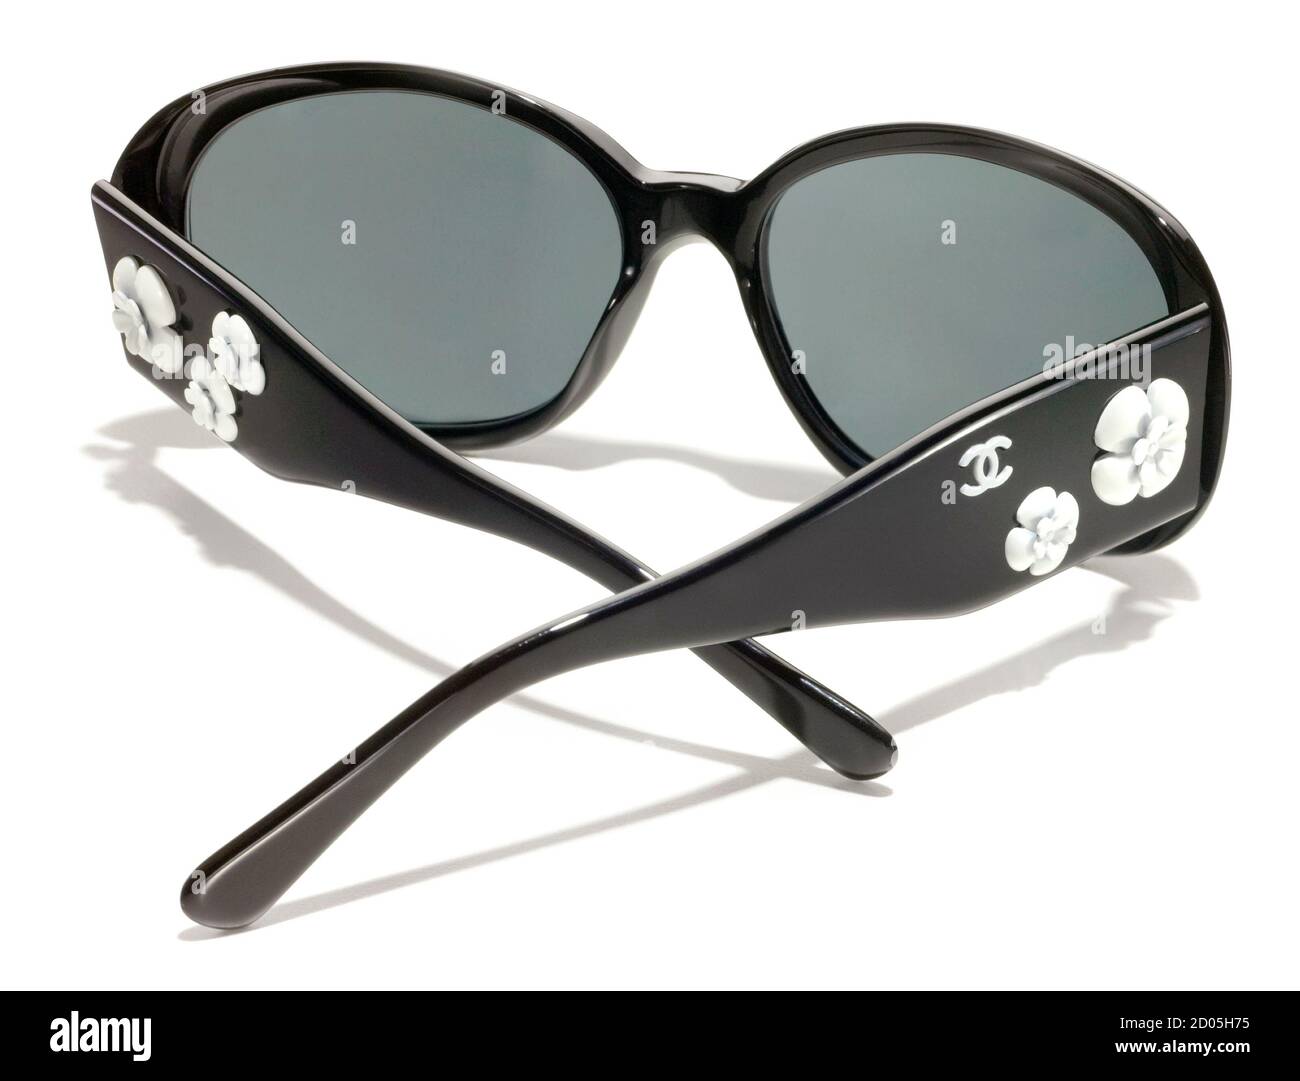 Chanel occhiali da sole immagini e fotografie stock ad alta risoluzione -  Alamy